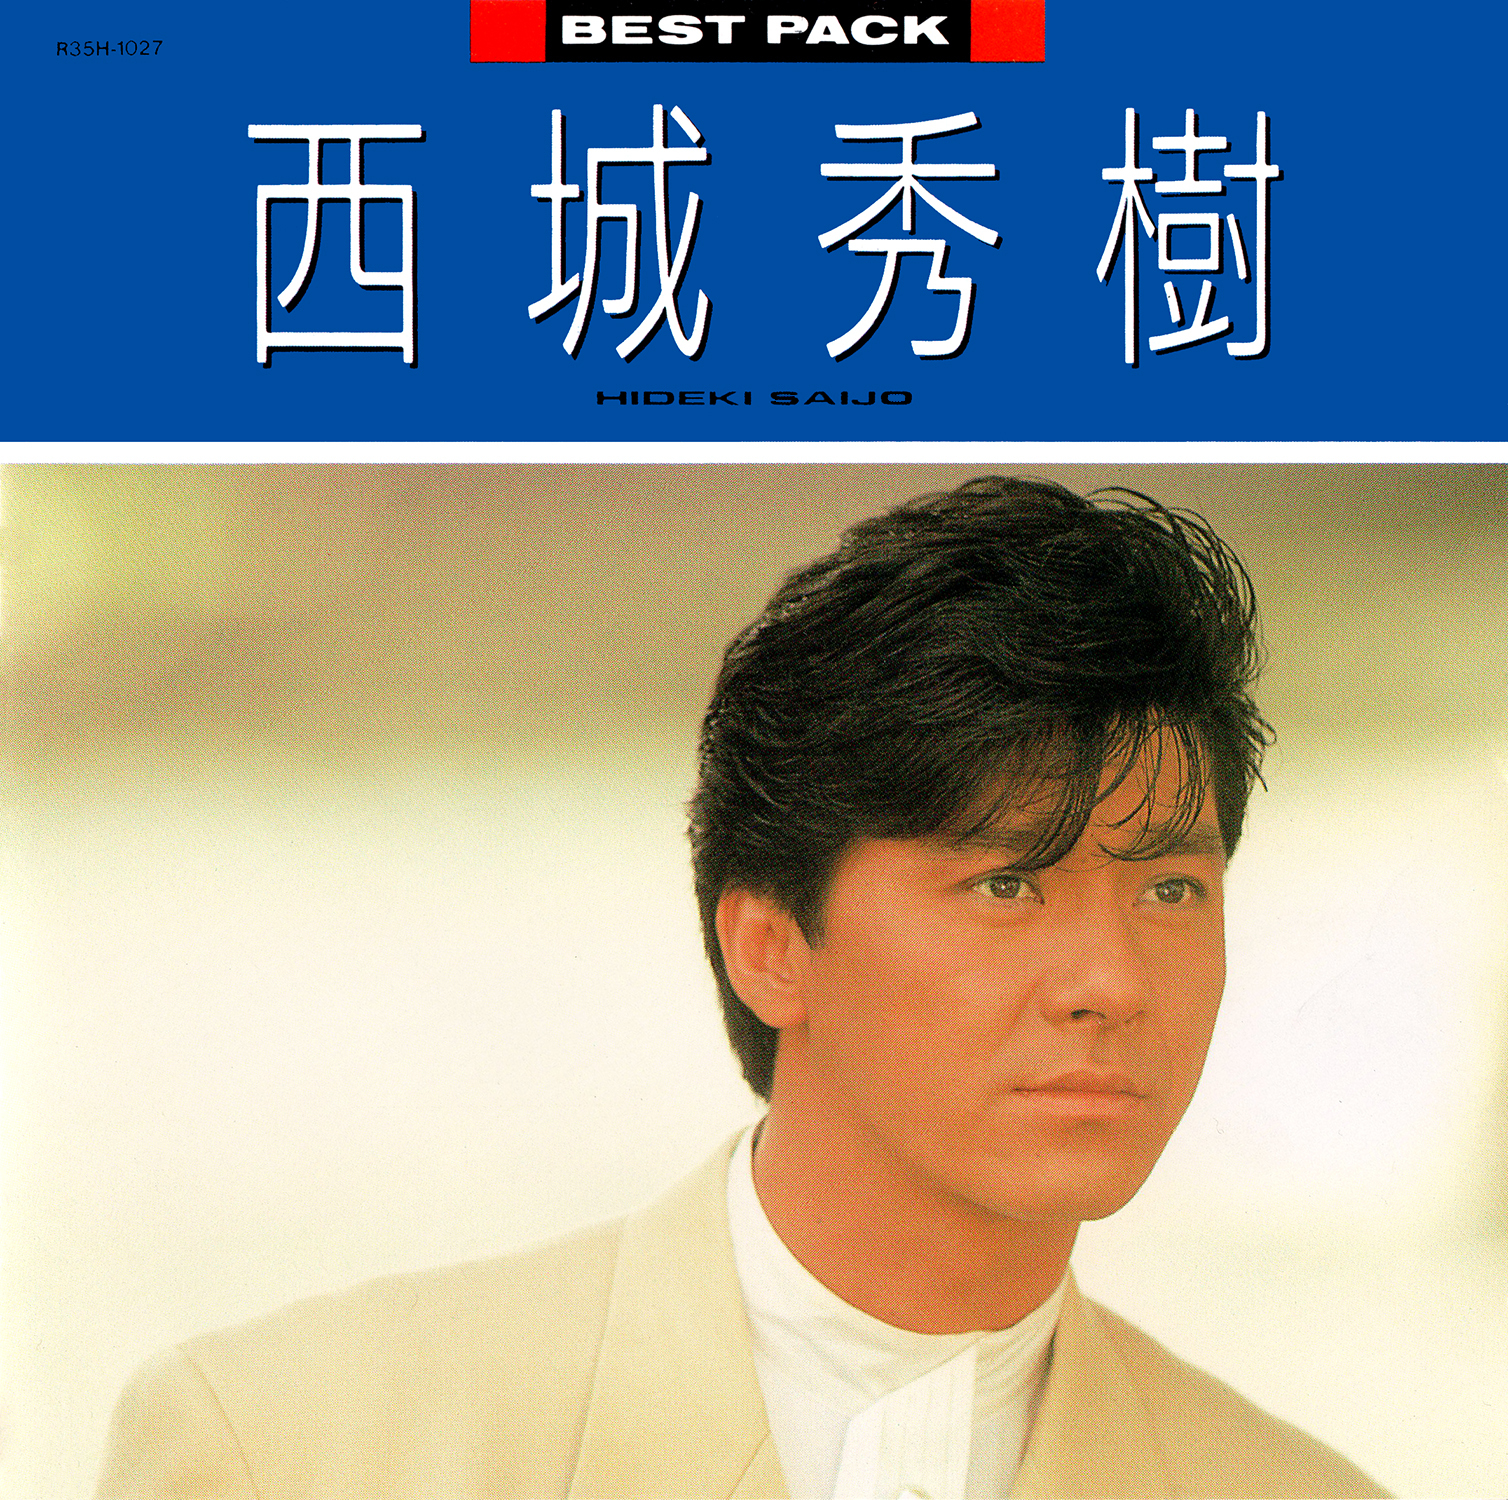 西城秀樹 (さいじょうひでき) ベスト・アルバム『BEST PACK '88』(1987年12月16日発売) 高画質CDジャケット画像